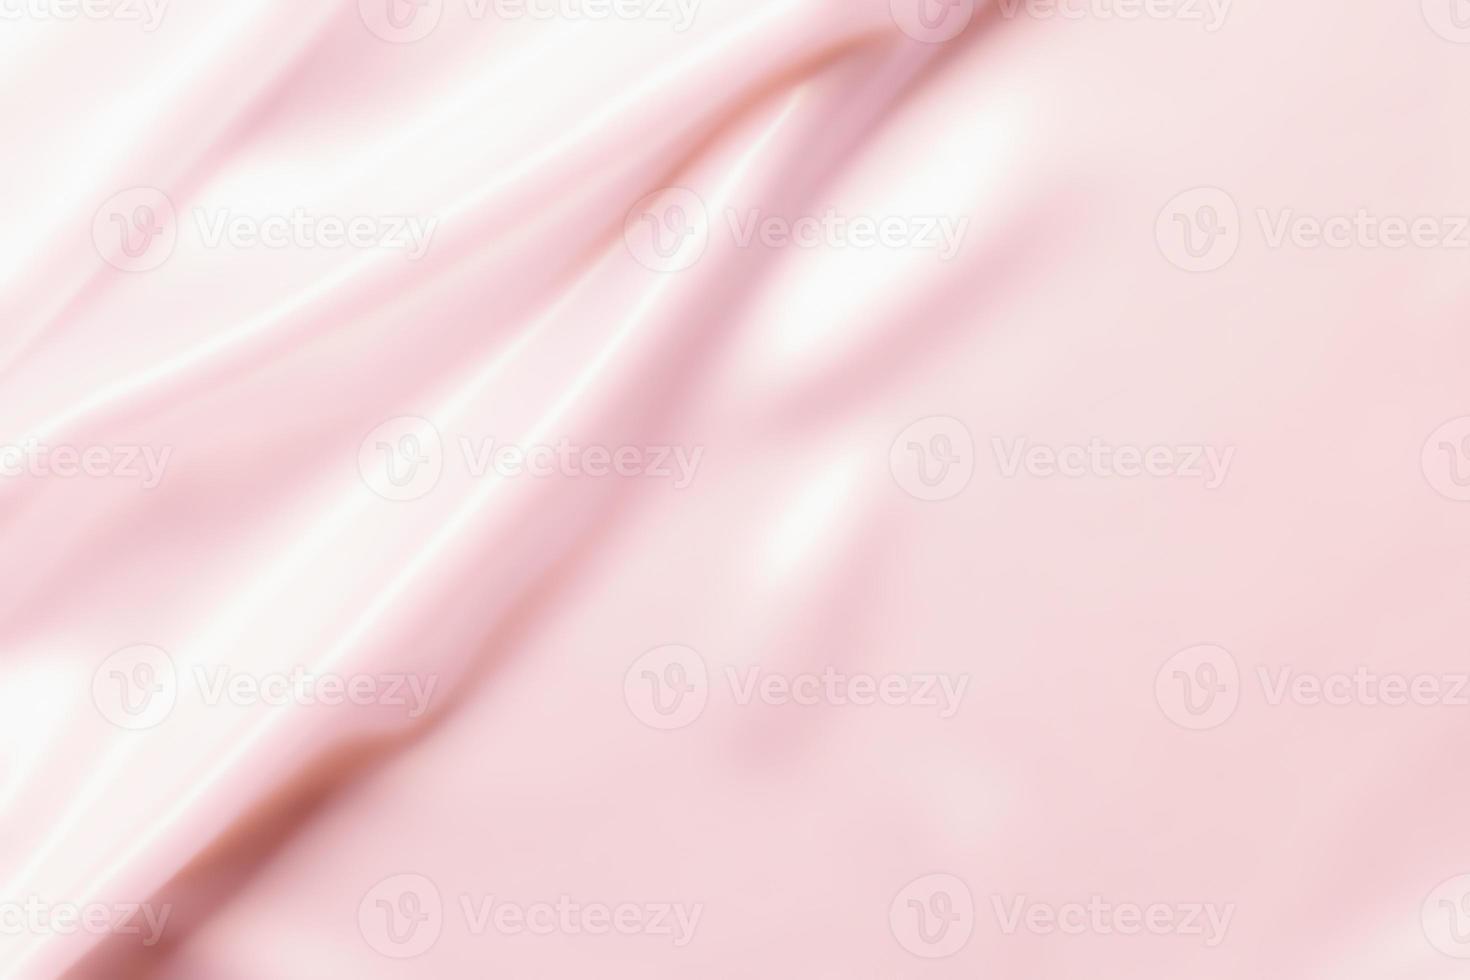 Texture of cosmetic cream photo